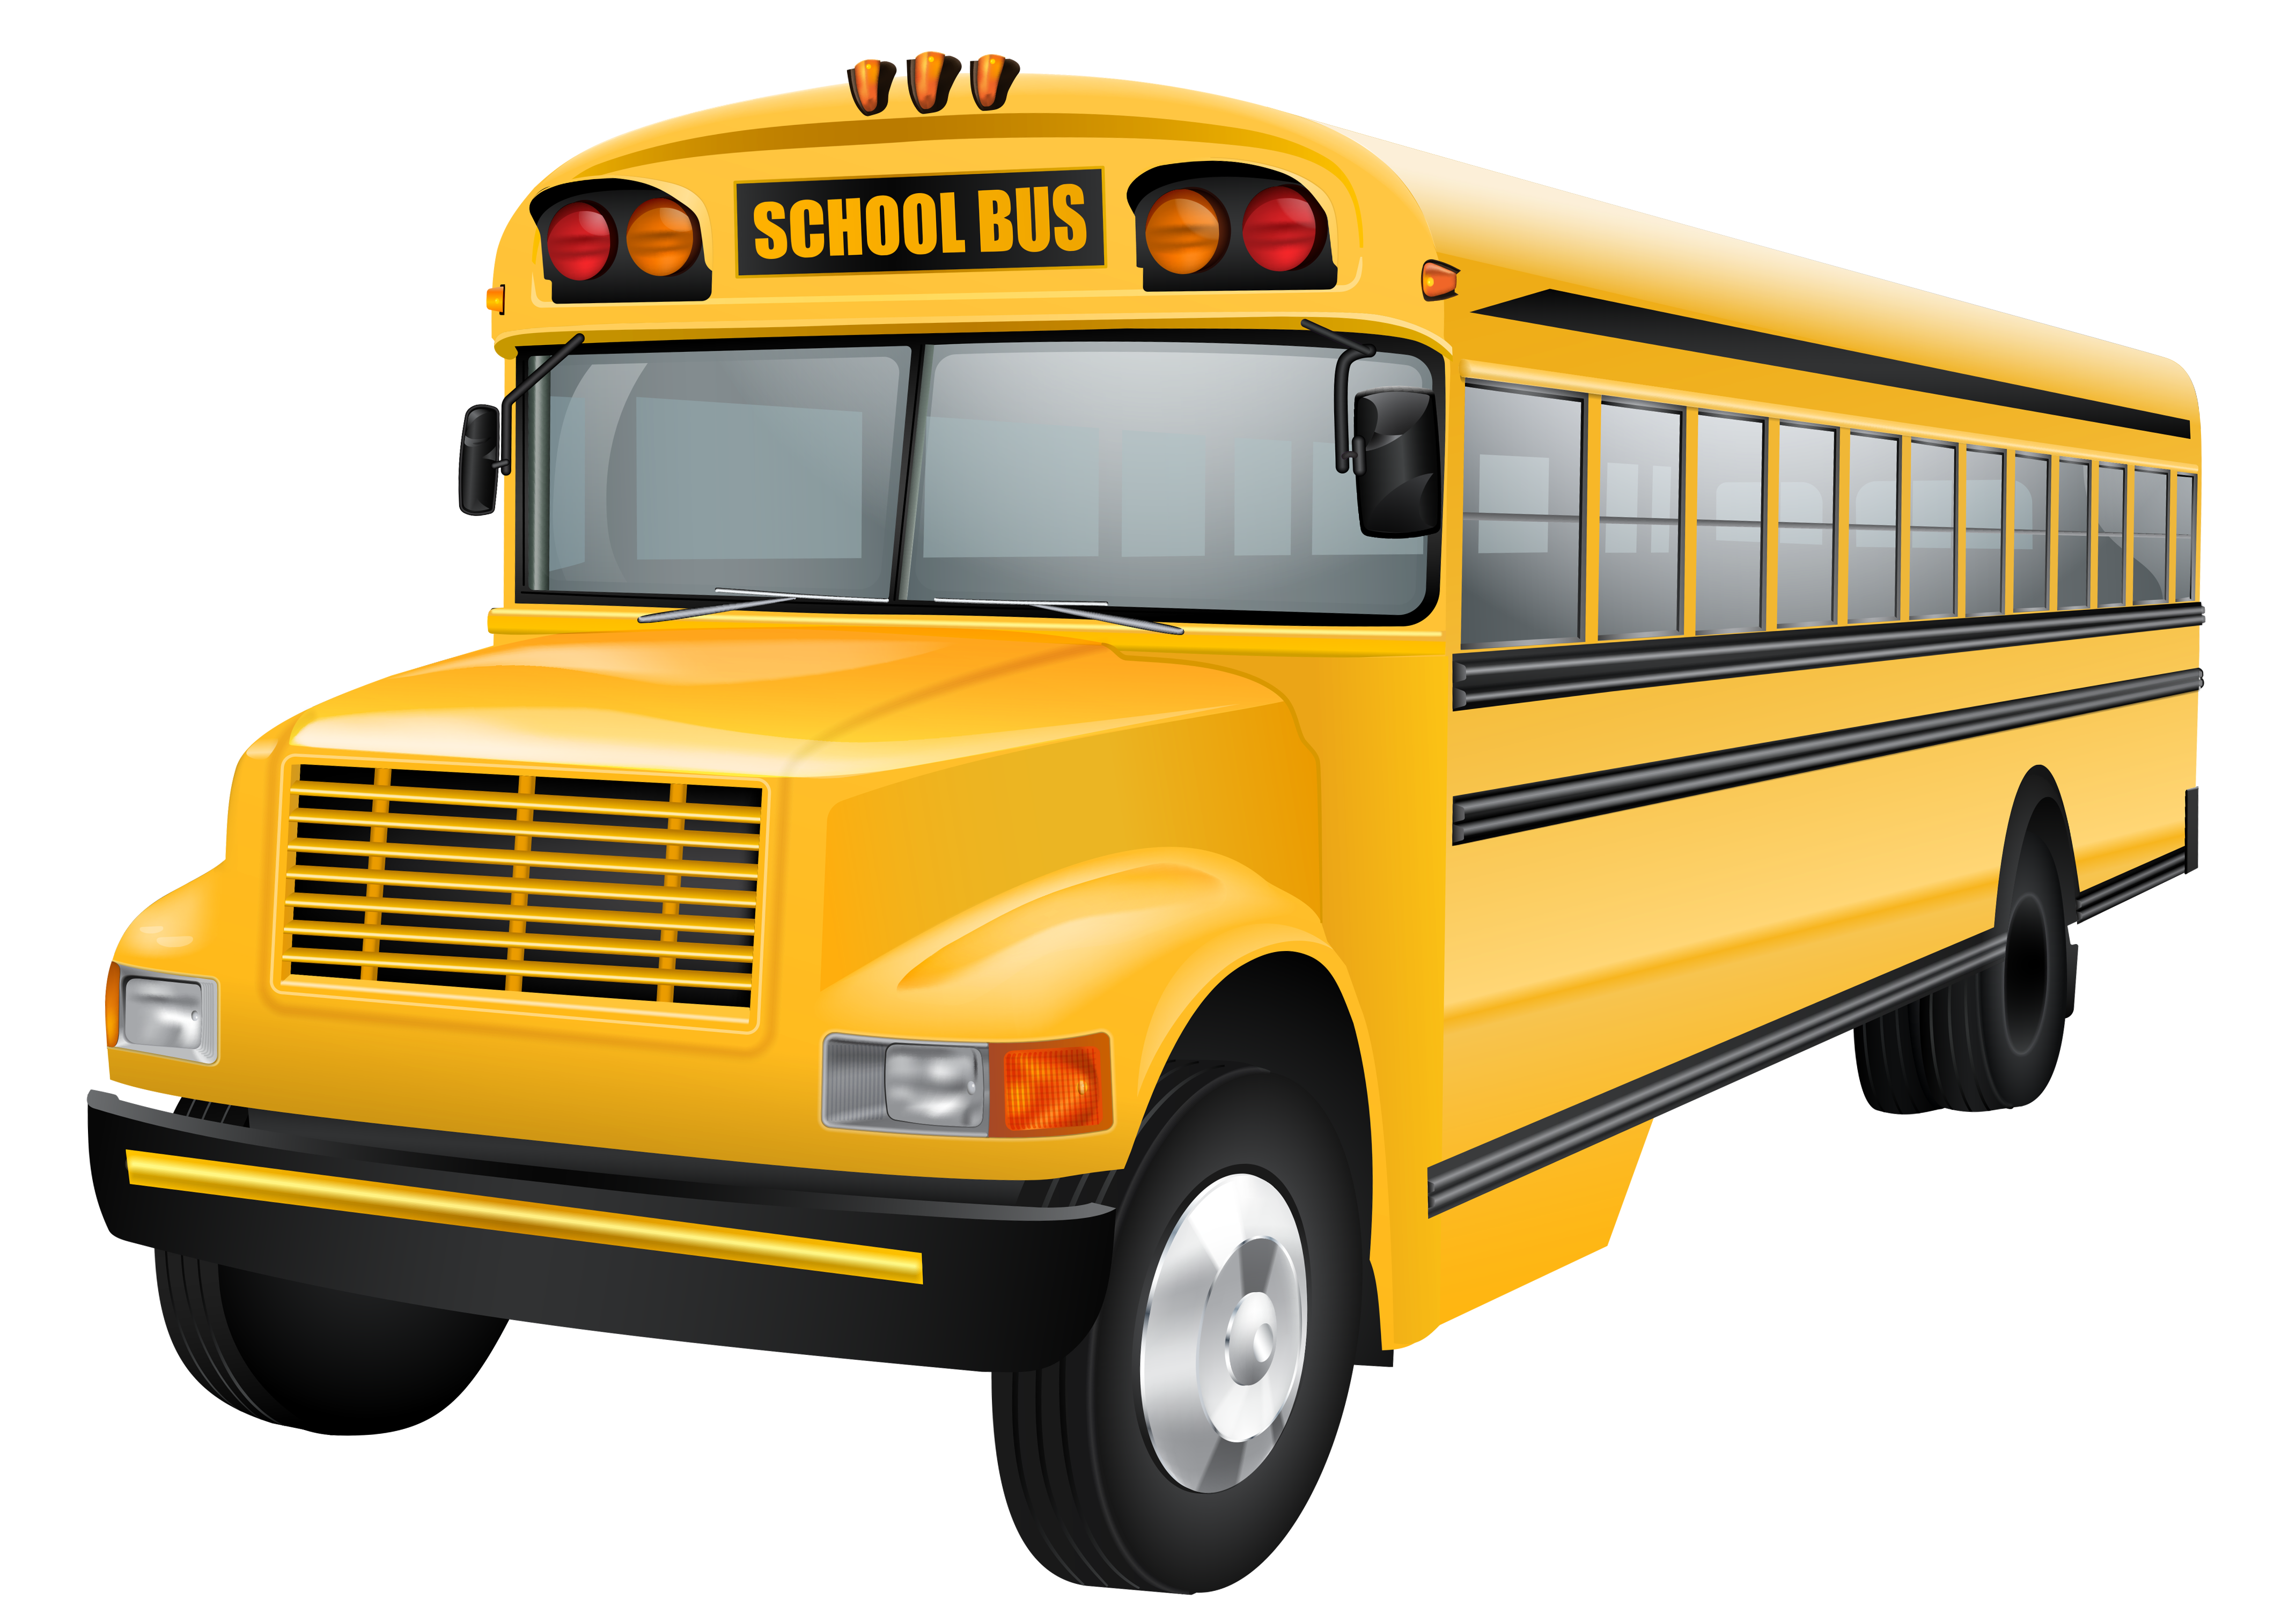 School Bus, School Bus Vector